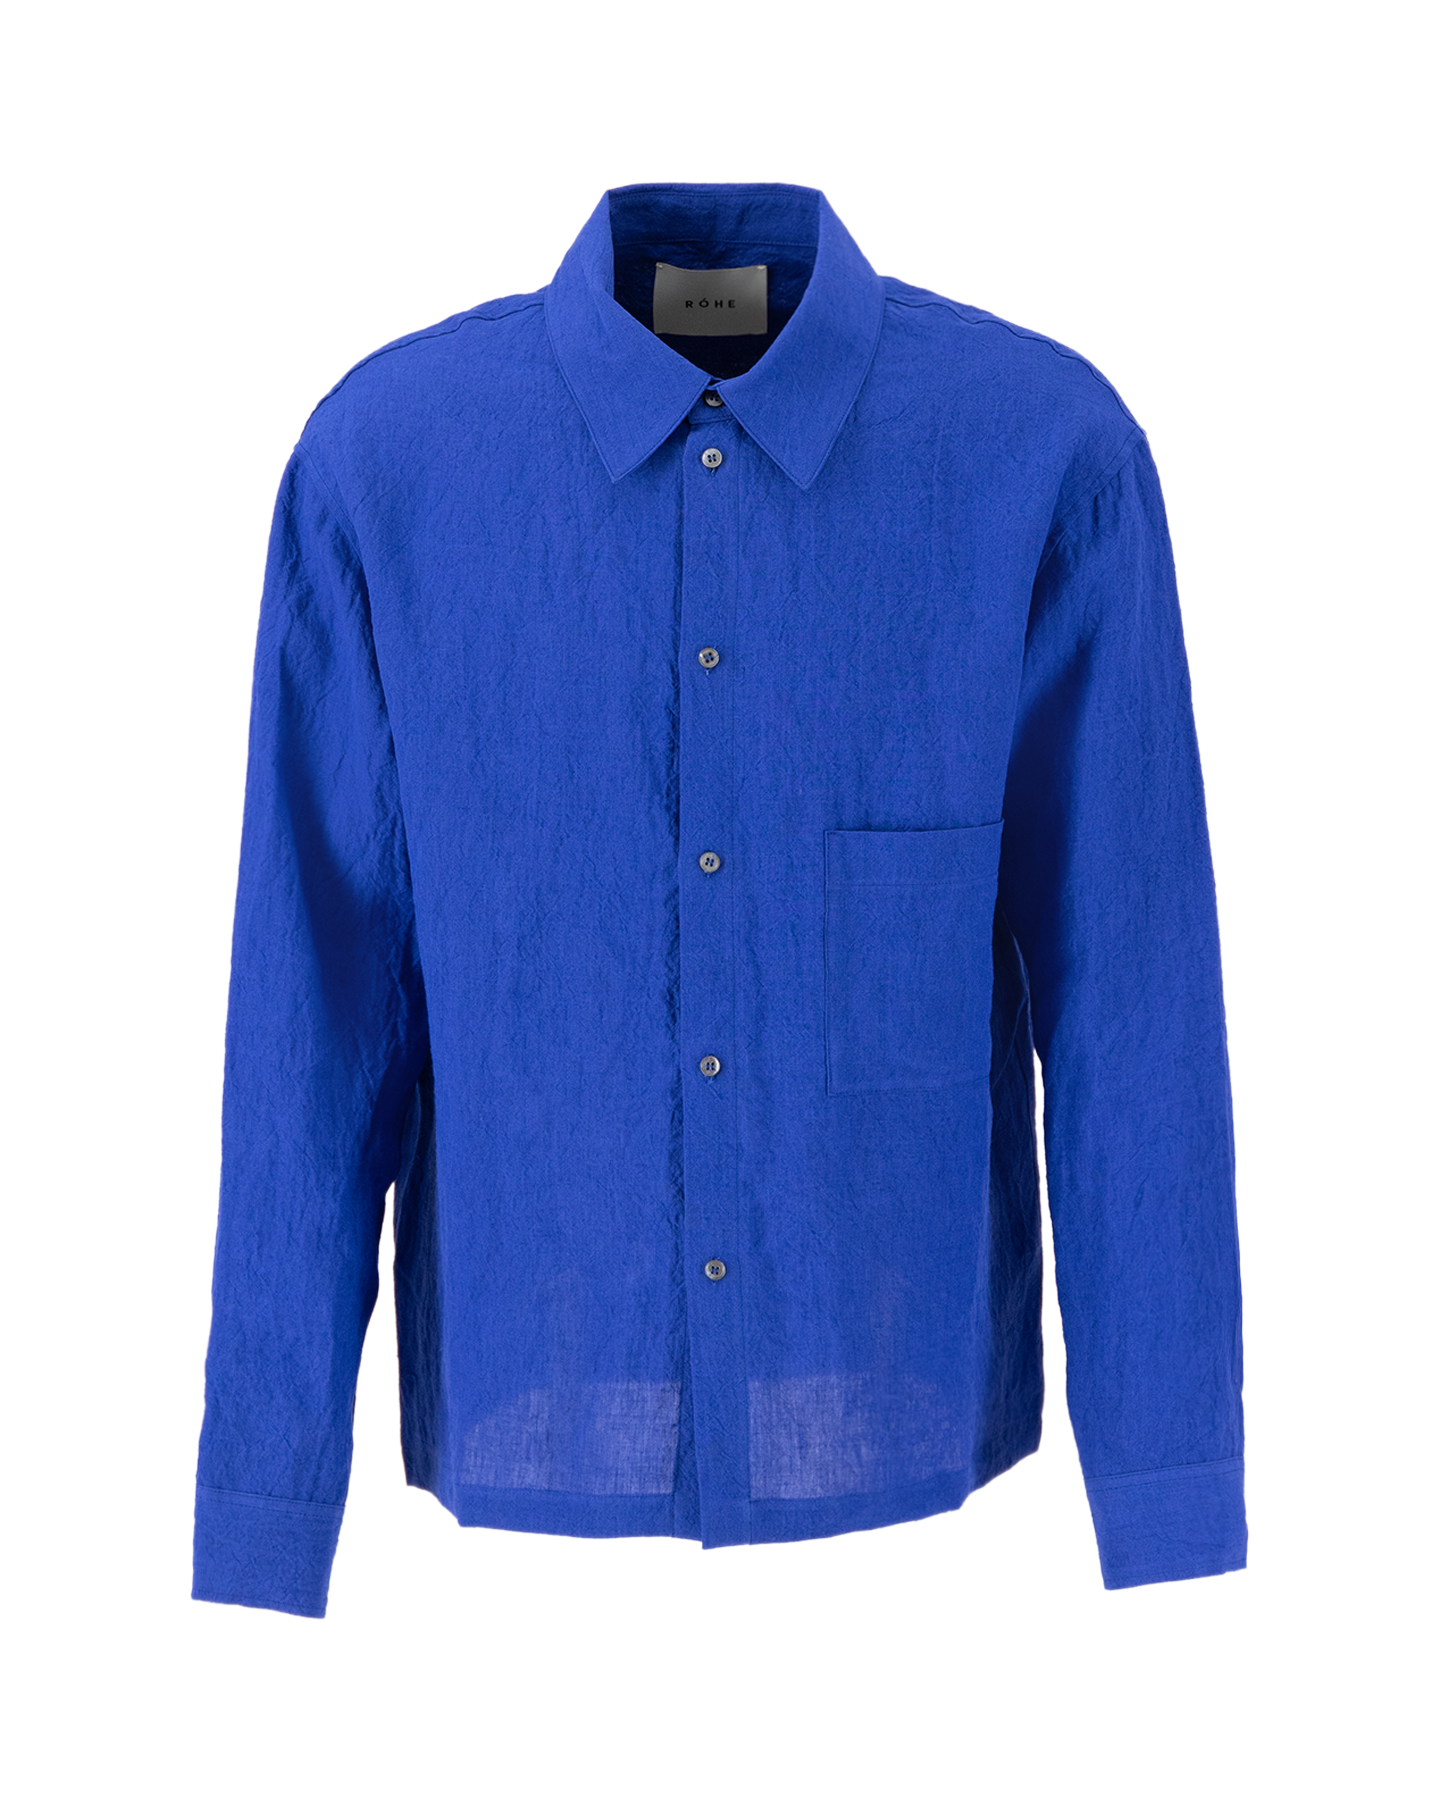 Róhe Hammered Linen Shirt Blue 1